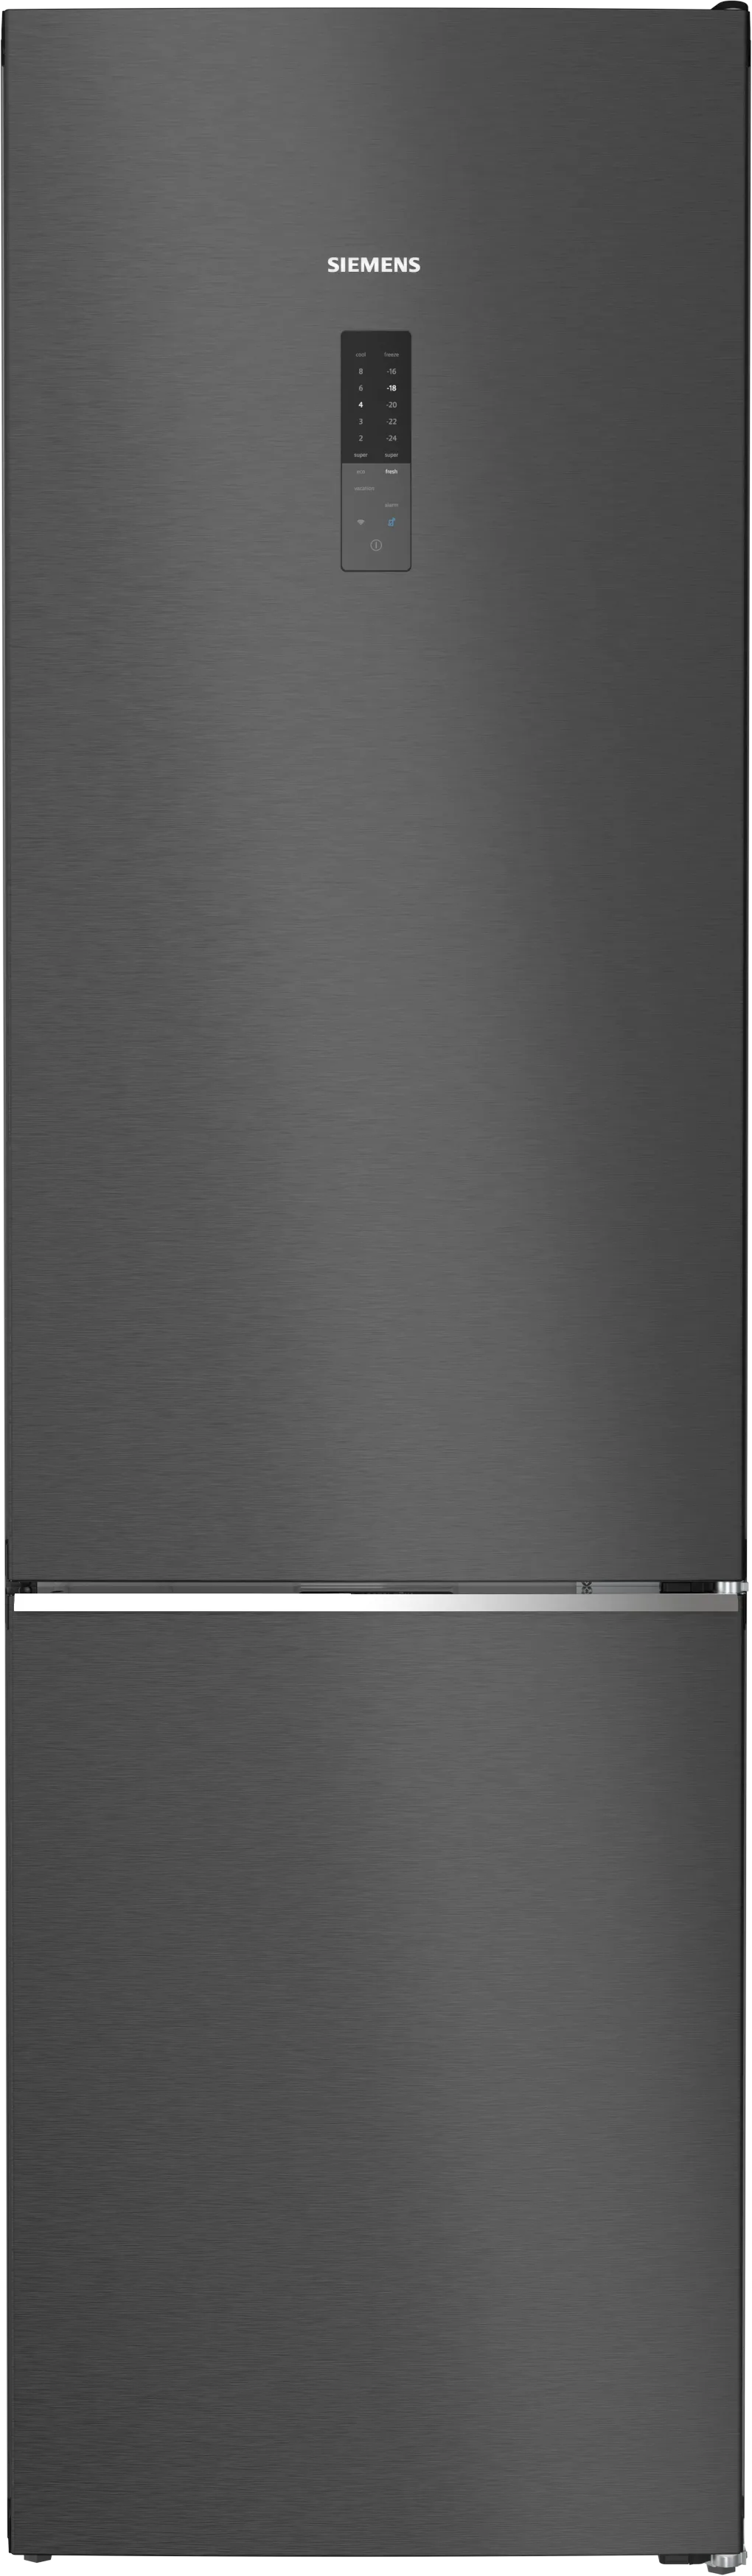 iQ500 Vrijstaande koel-vriescombinatie met bottom-freezer 203 x 60 cm Zwart geborsteld staal antiFingerprint 